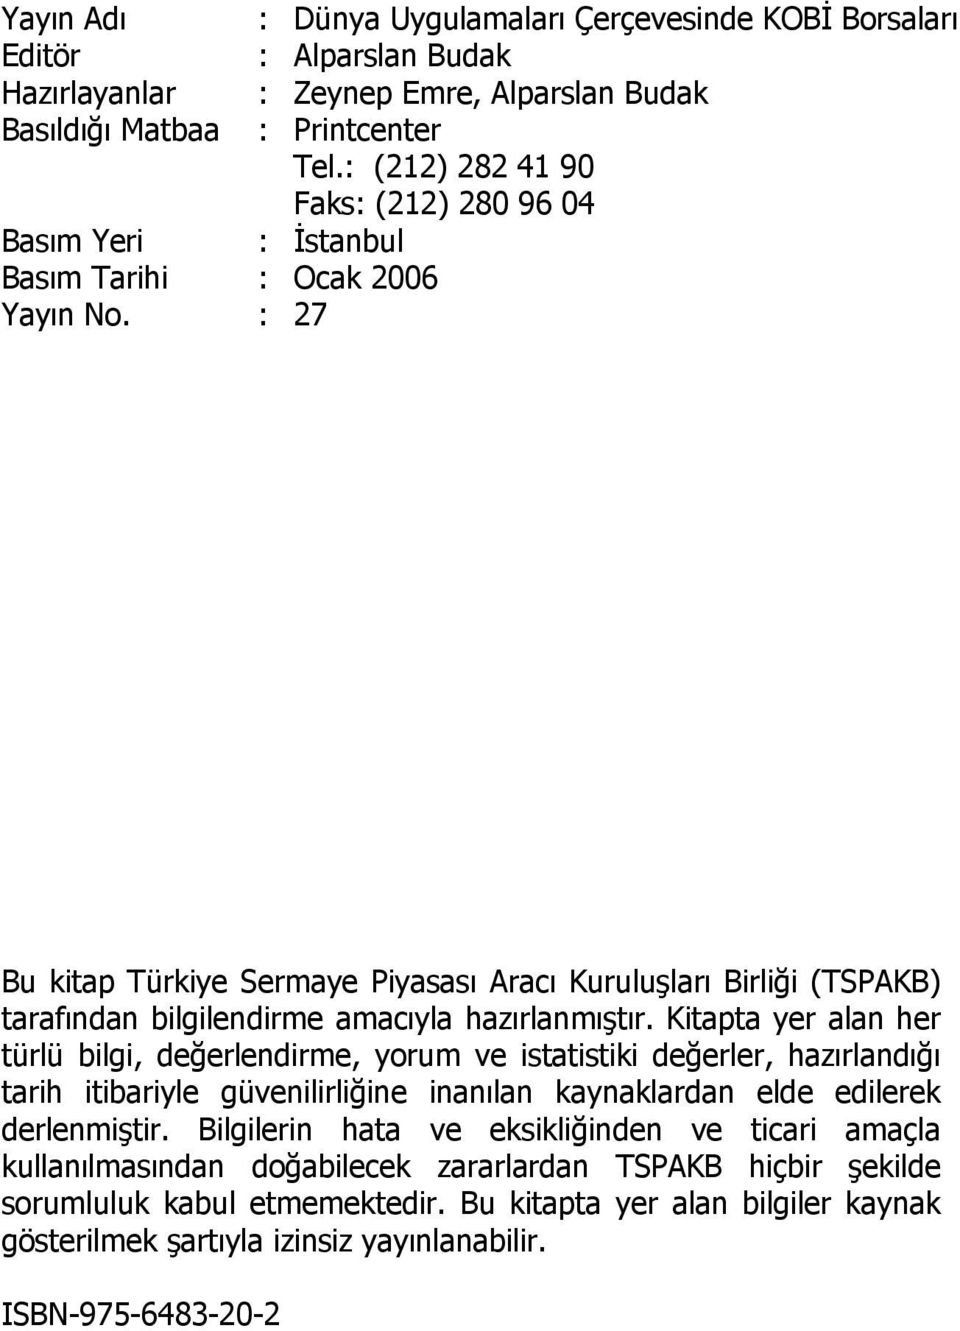 : (212) 282 41 90 Faks: (212) 280 96 04 : İstanbul Bu kitap Türkiye Sermaye Piyasası Aracı Kuruluşları Birliği (TSPAKB) tarafından bilgilendirme amacıyla hazırlanmıştır.